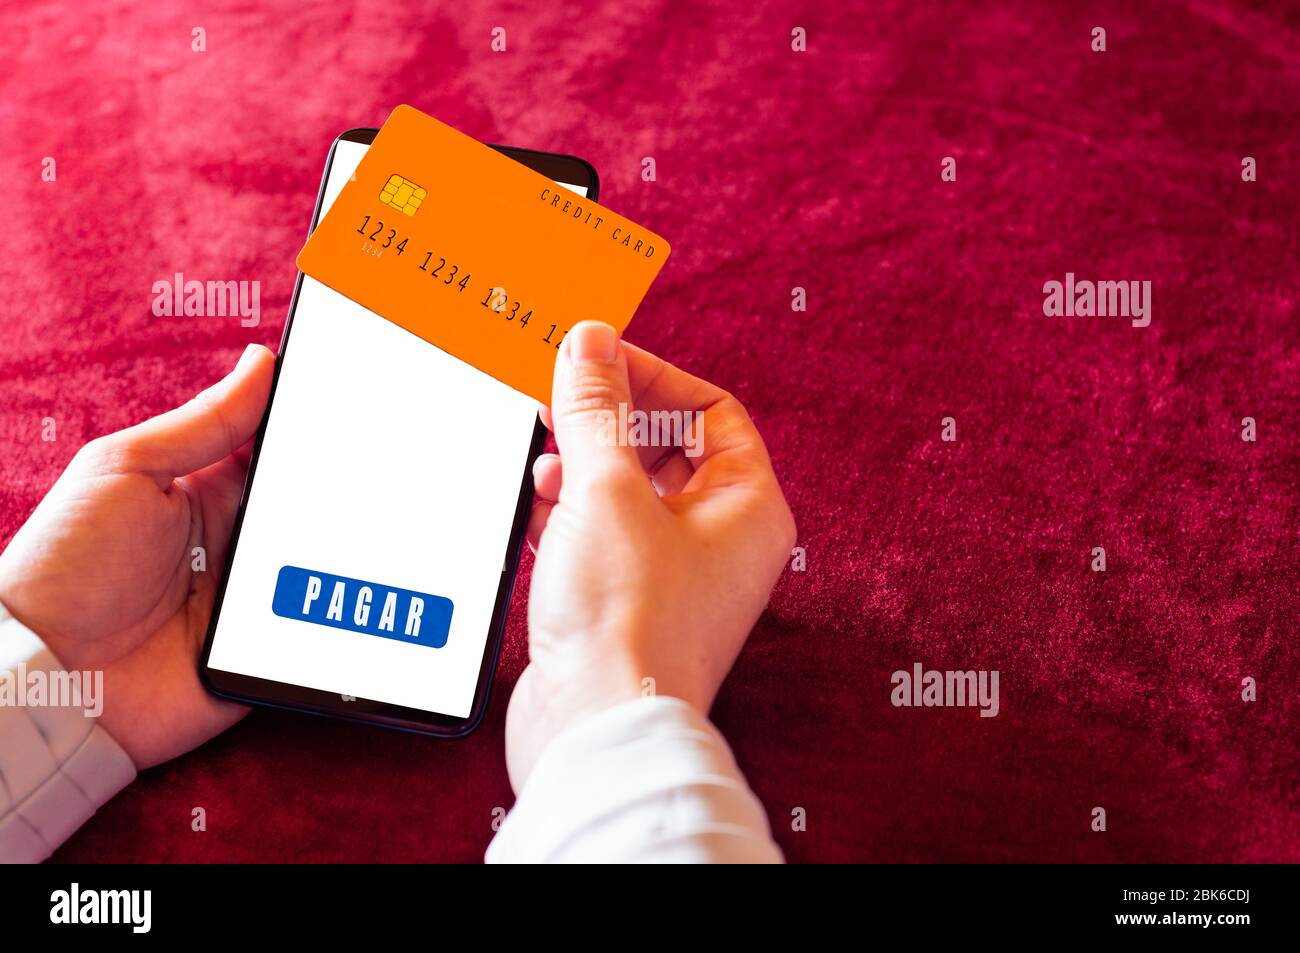 Smartphone portable avec application d'achat en ligne et carte de crédit. Pagar est payé en espagnol Banque D'Images